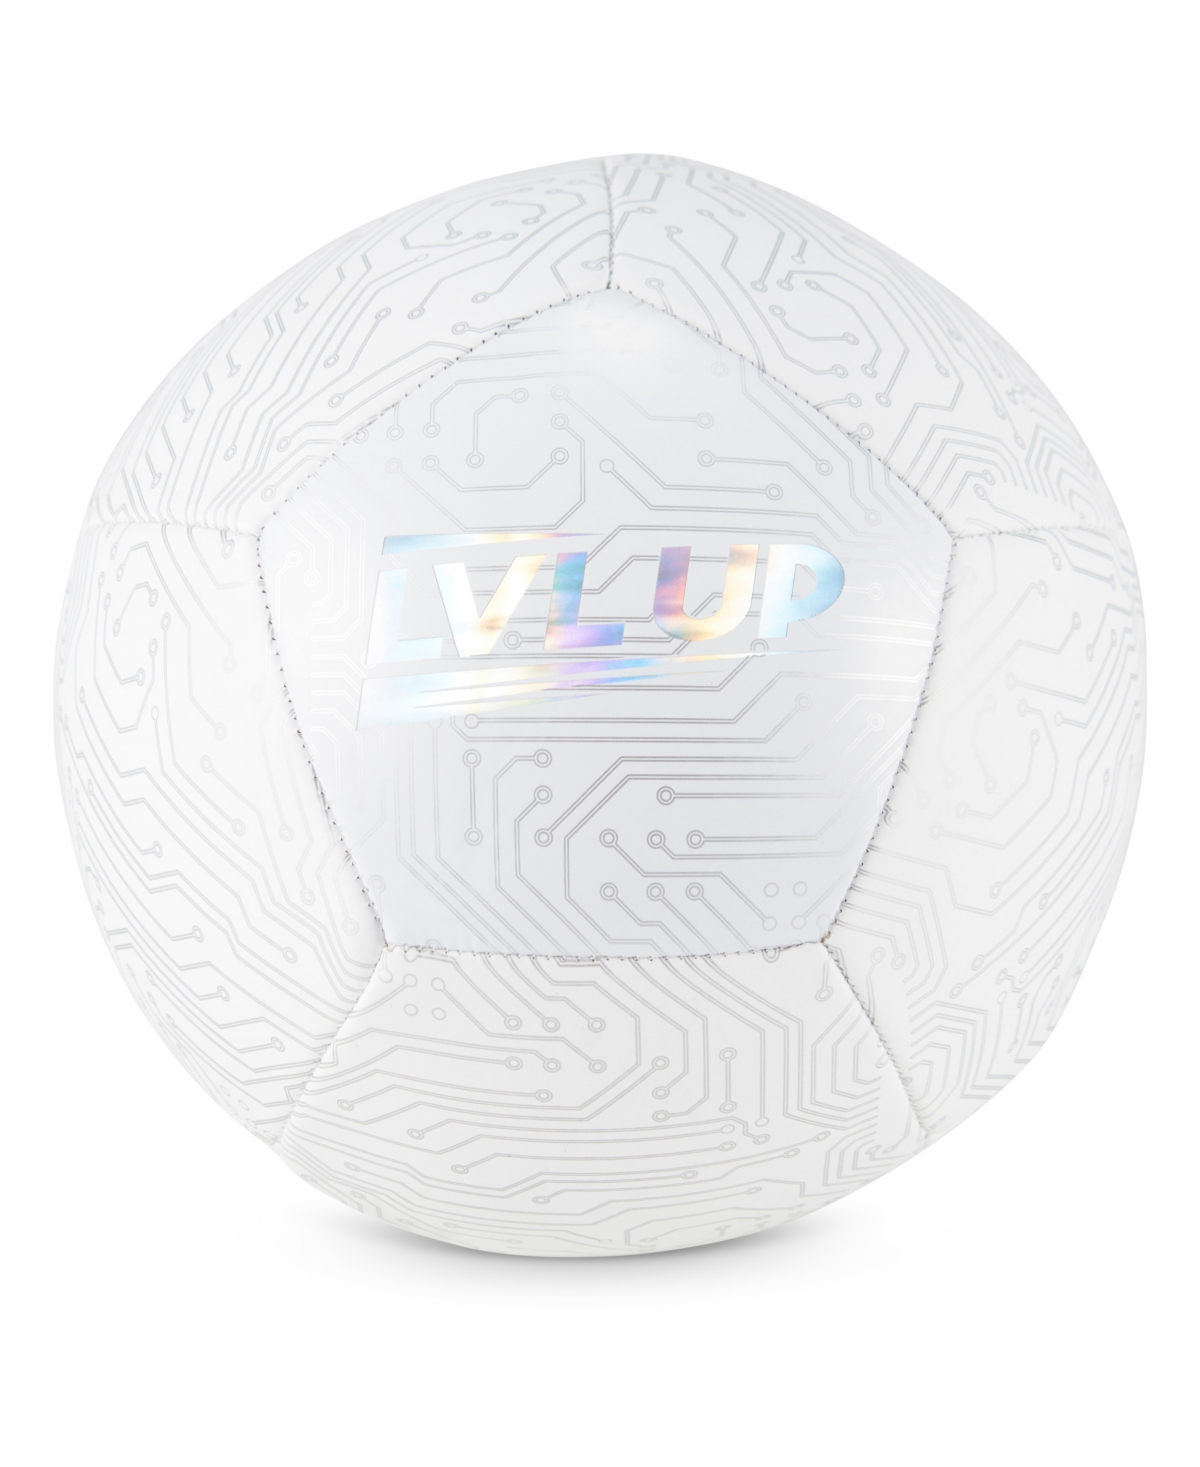 Sakar Level Up Soccerball In White